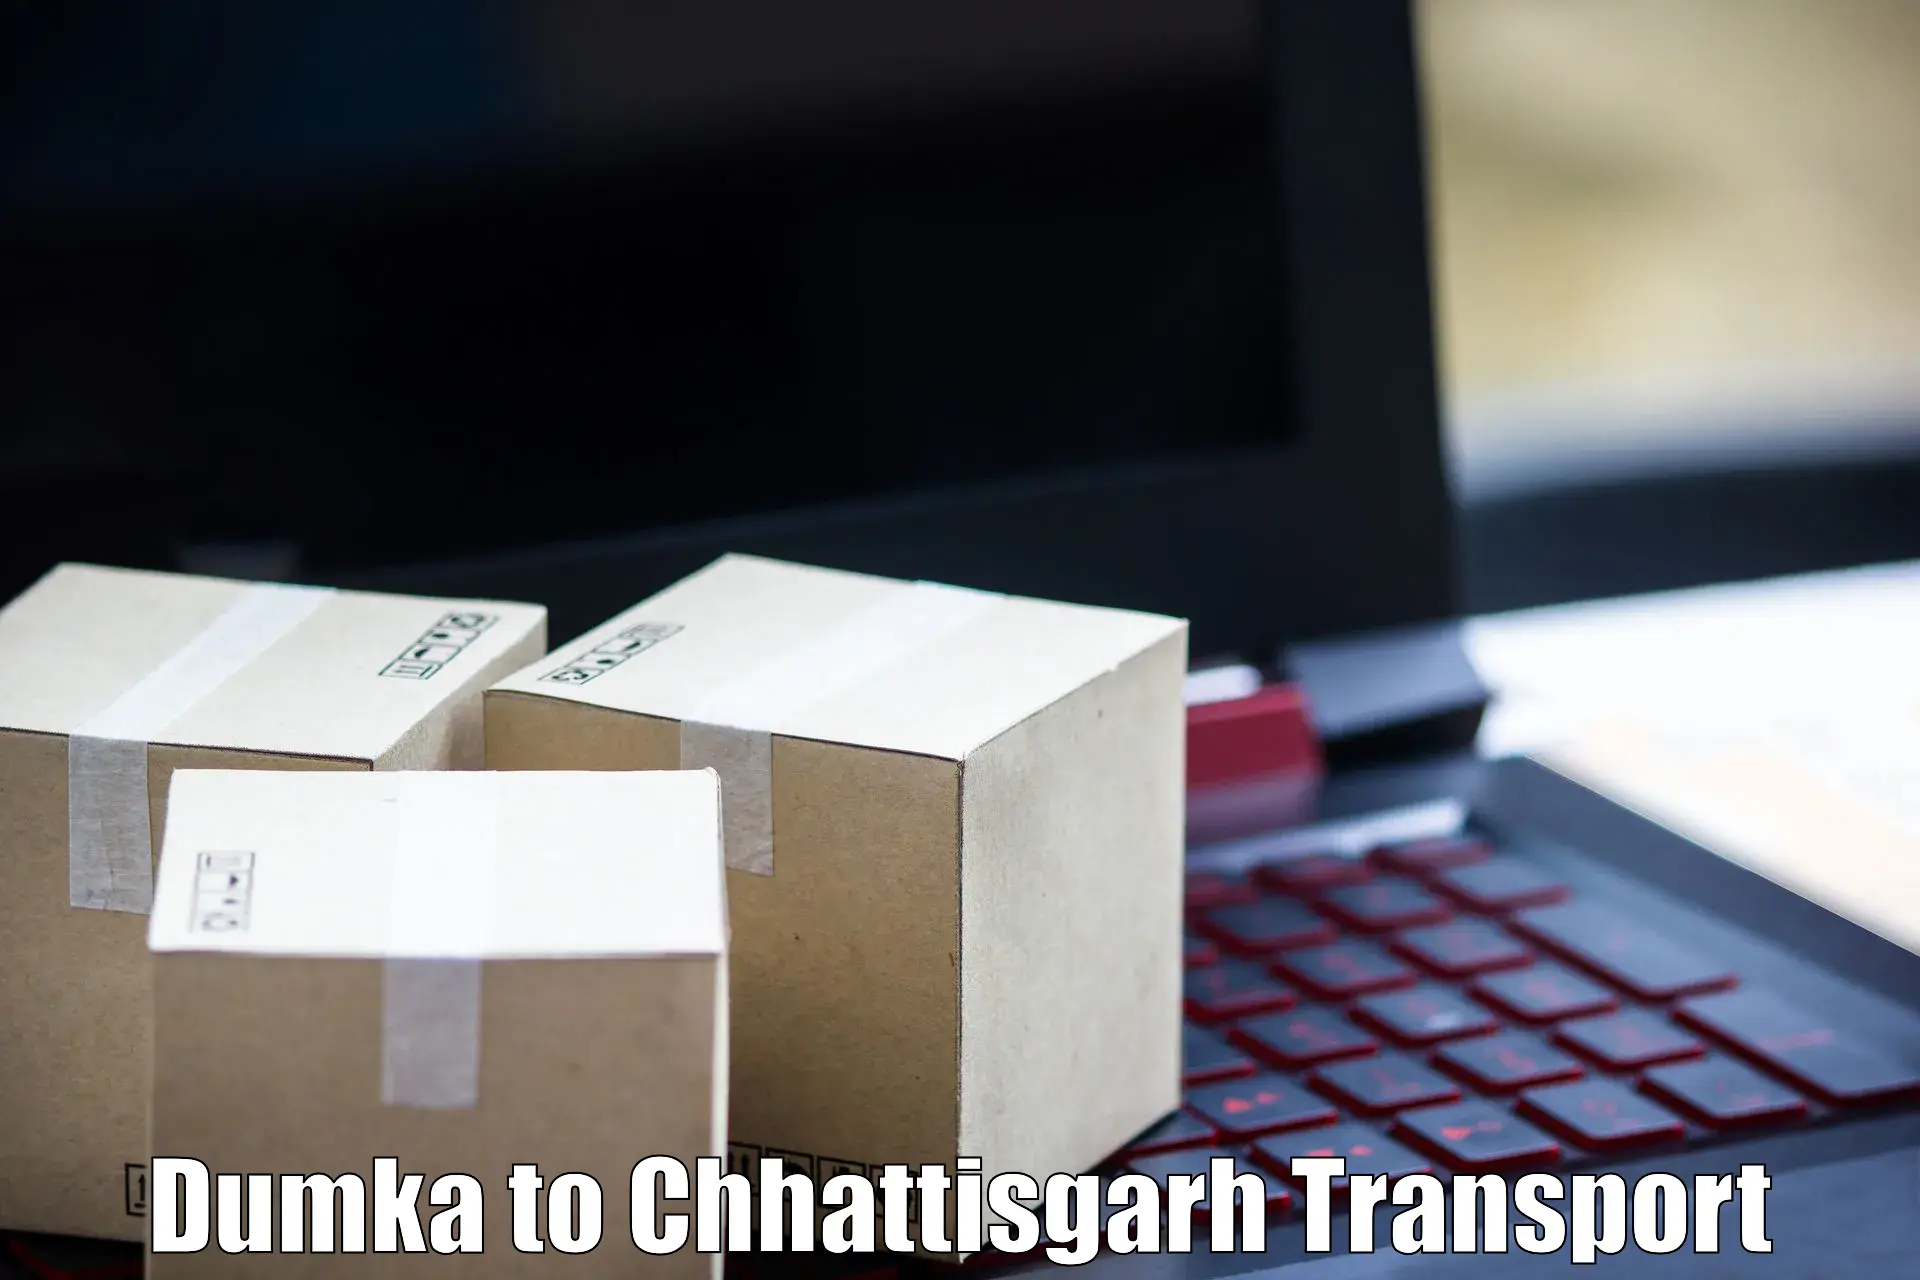 Road transport online services Dumka to Premnagar